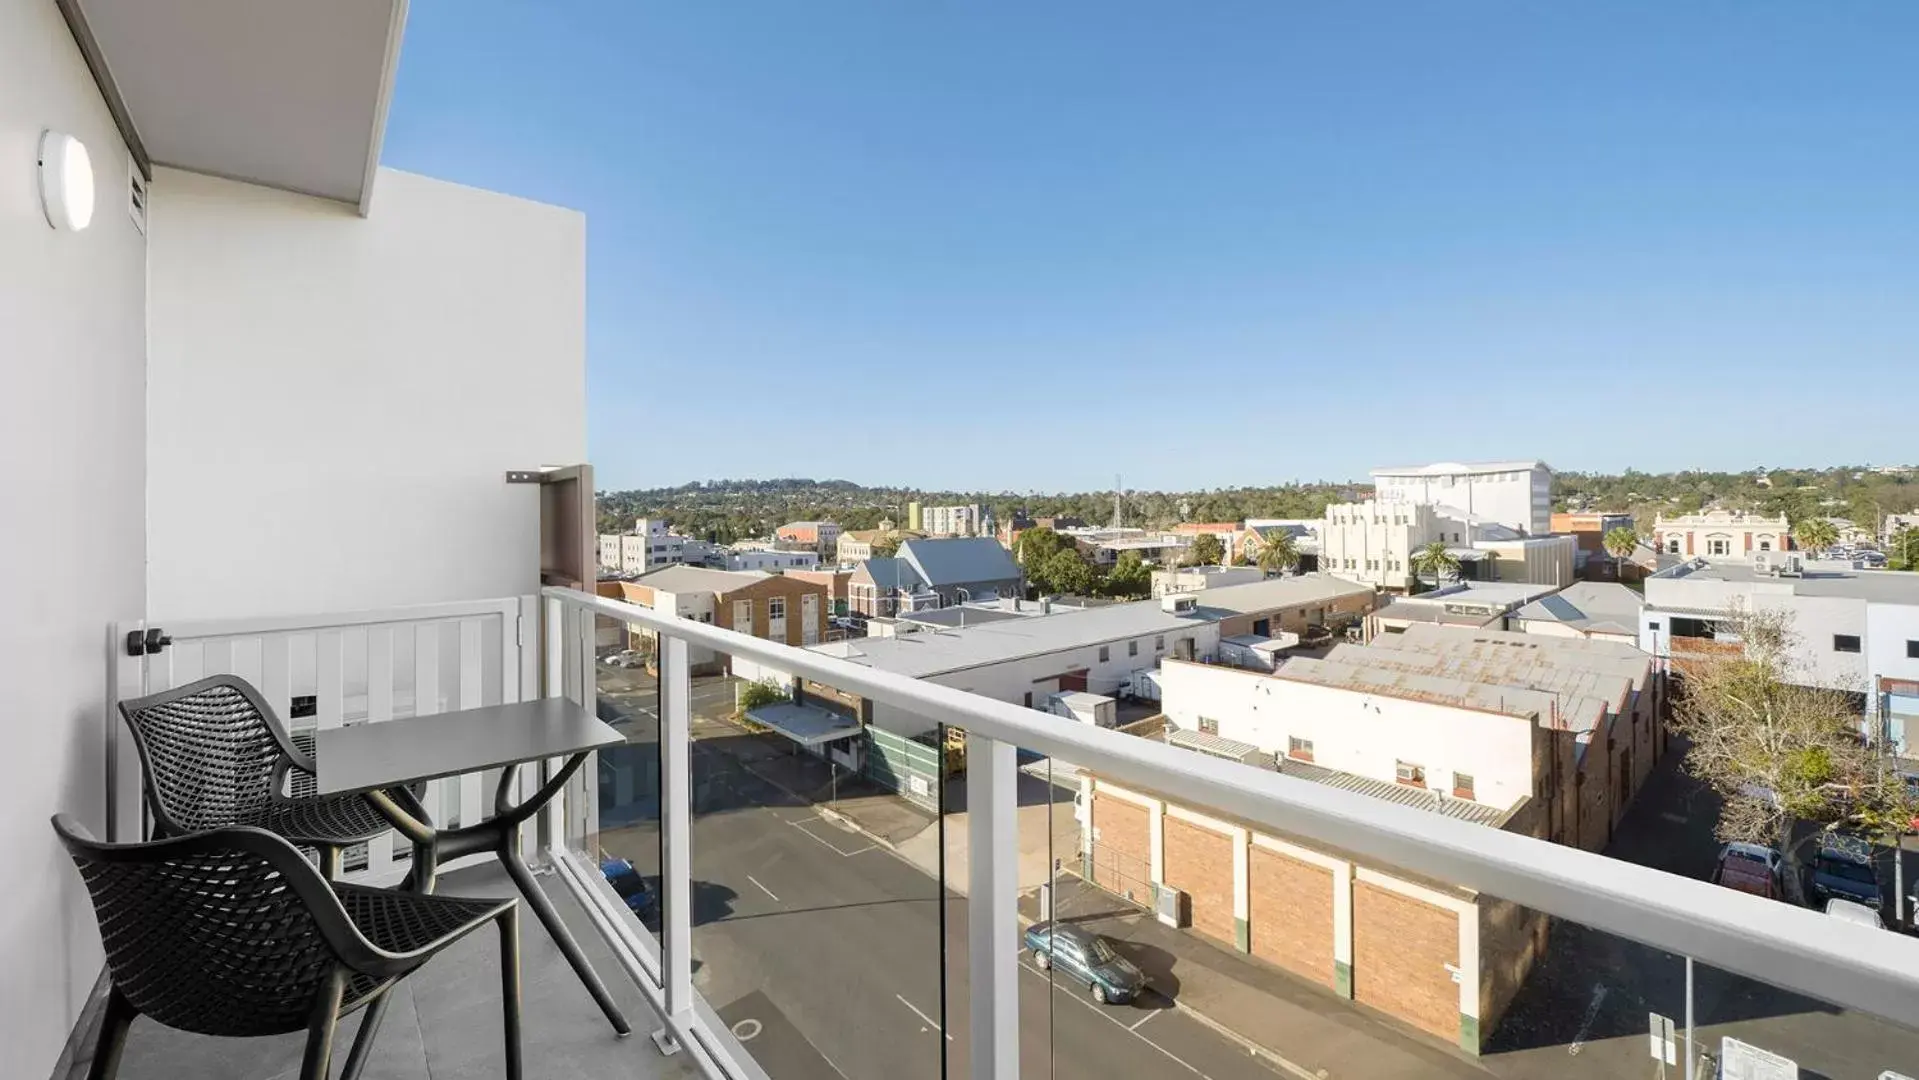 Balcony/Terrace in Oaks Toowoomba Hotel